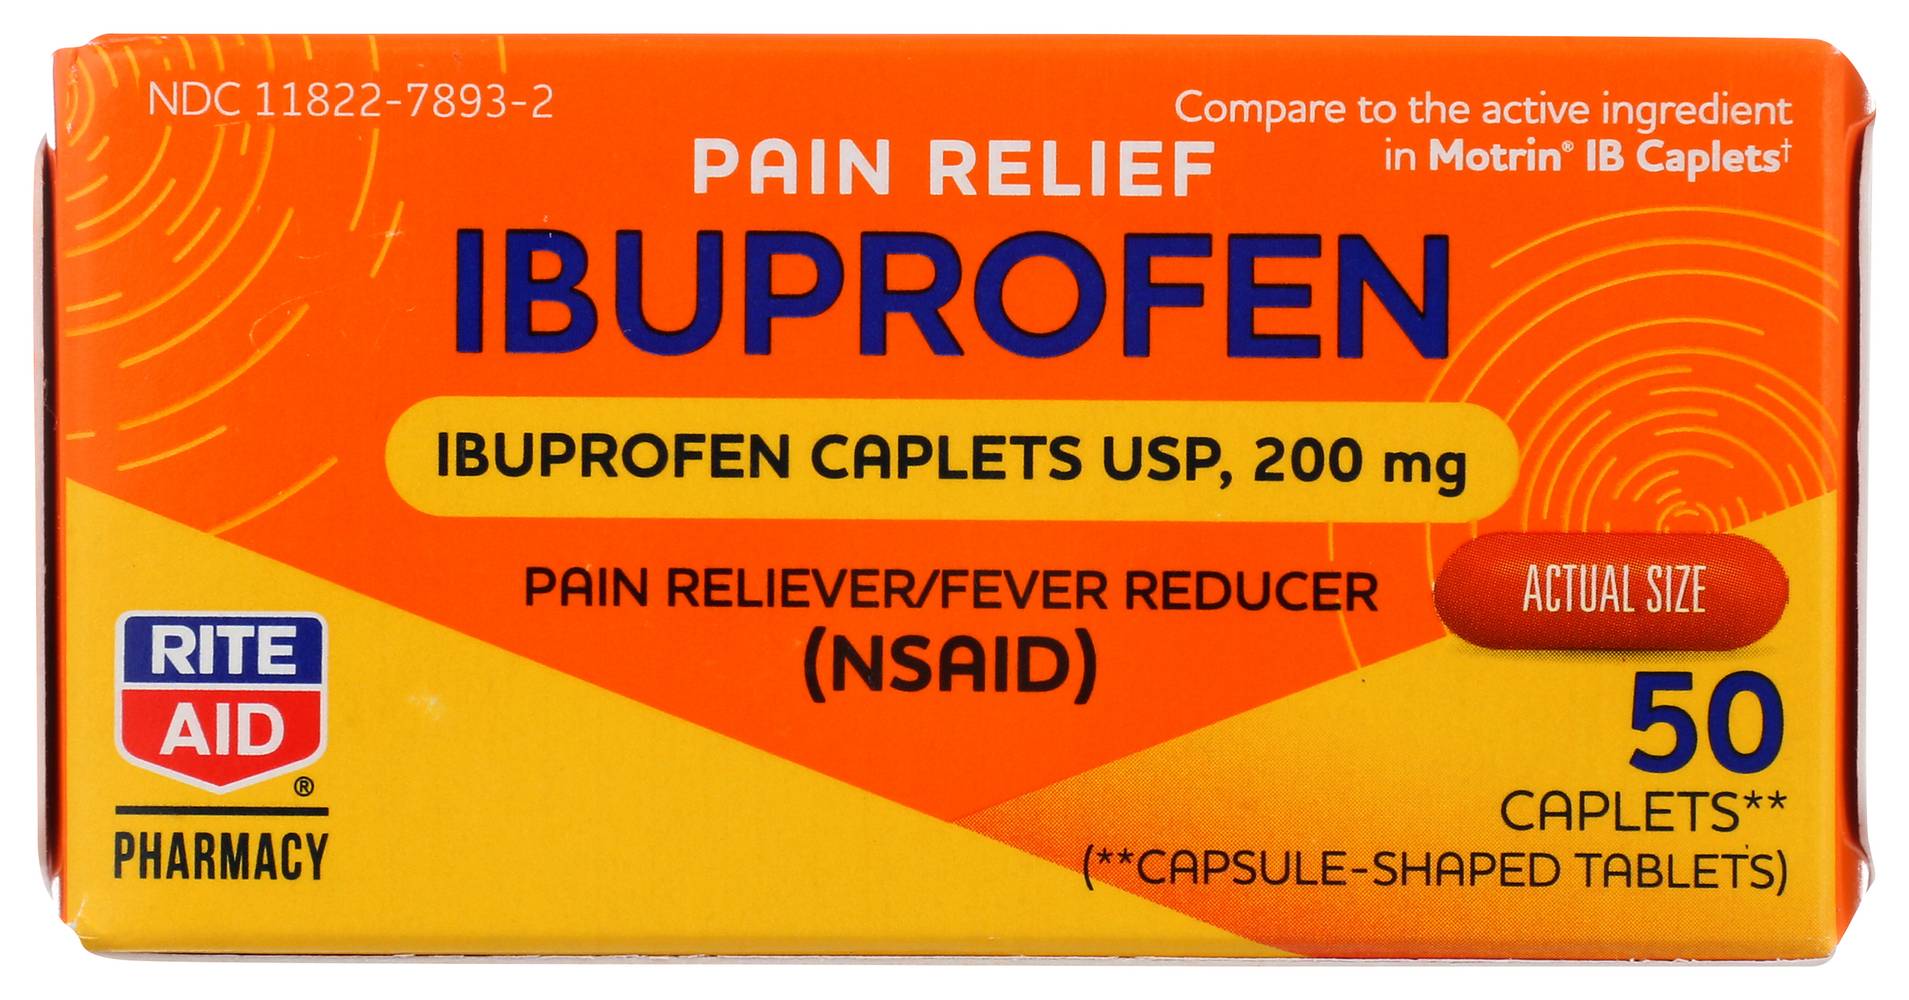 Rite Aid Pain Relief Ibuprofen Caplets